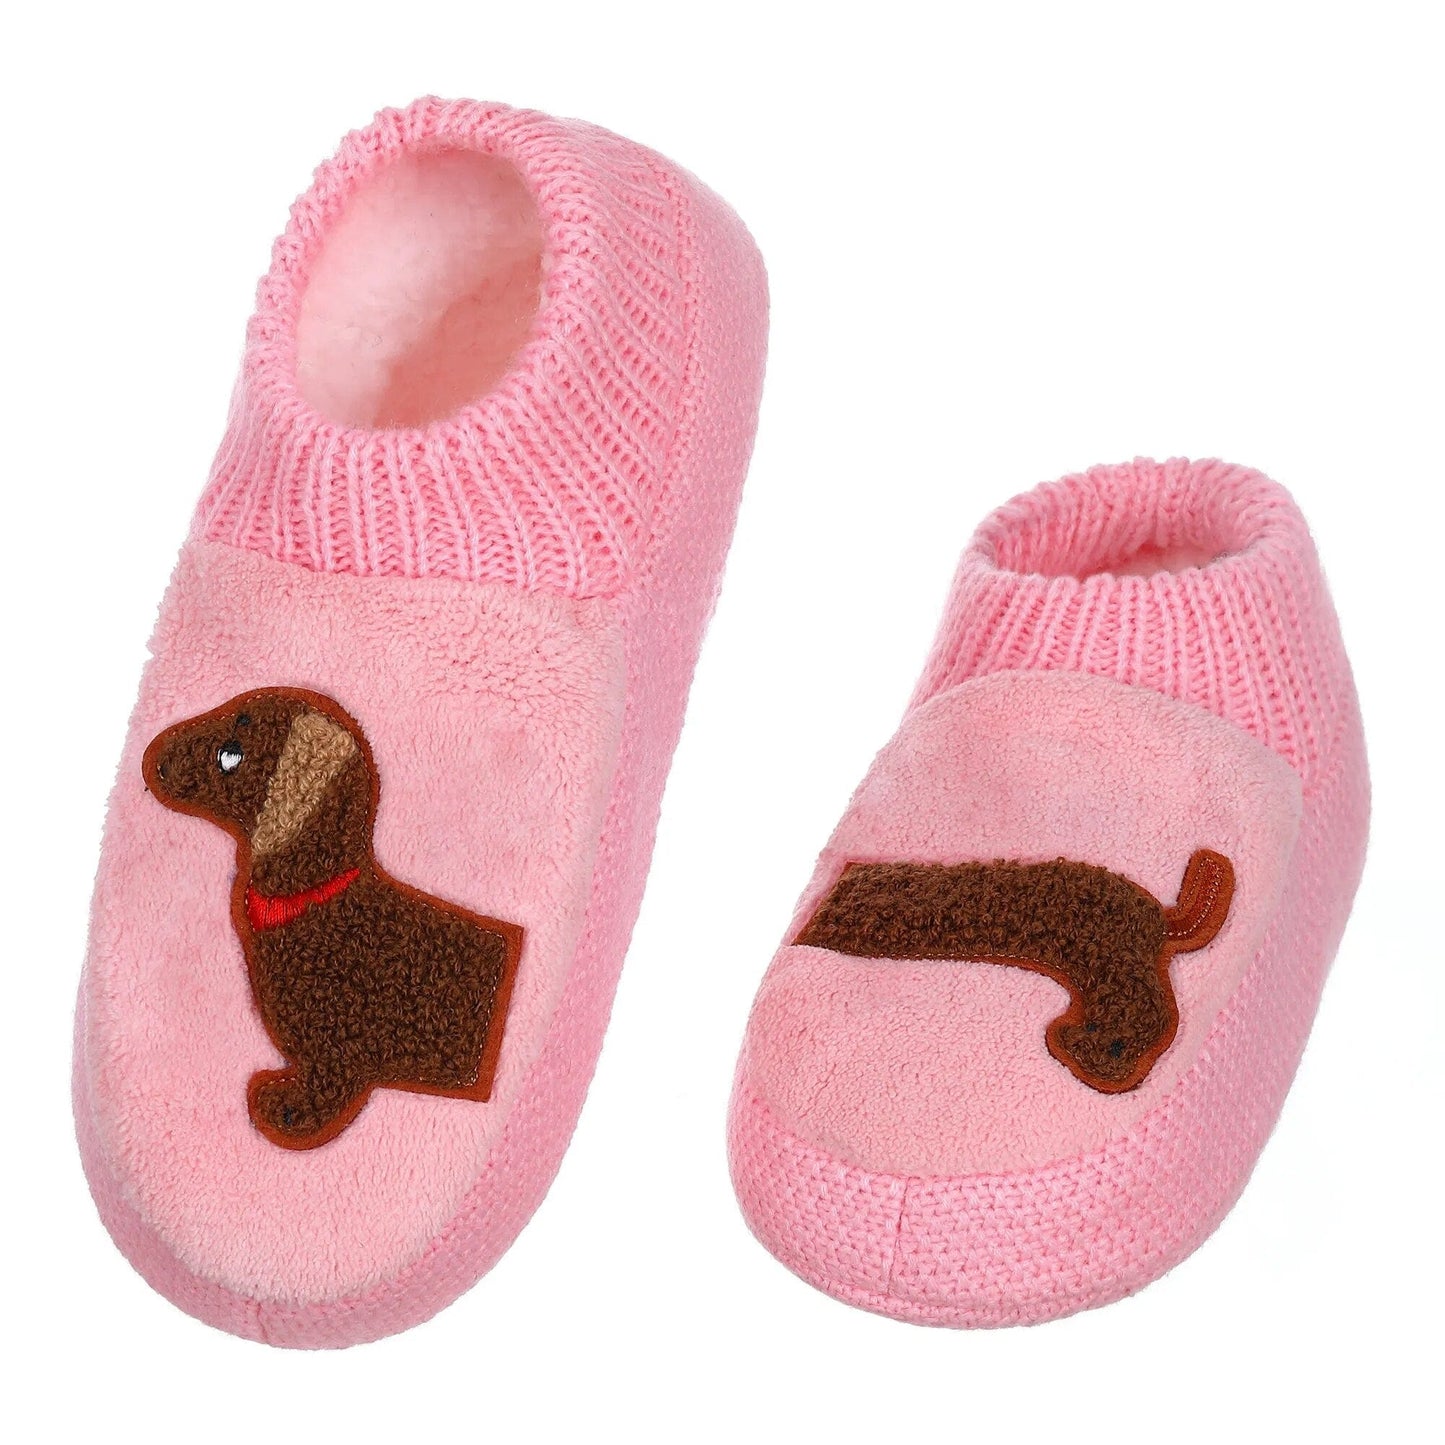 Fuzzy Dachshund Slipper Socks The Doxie World